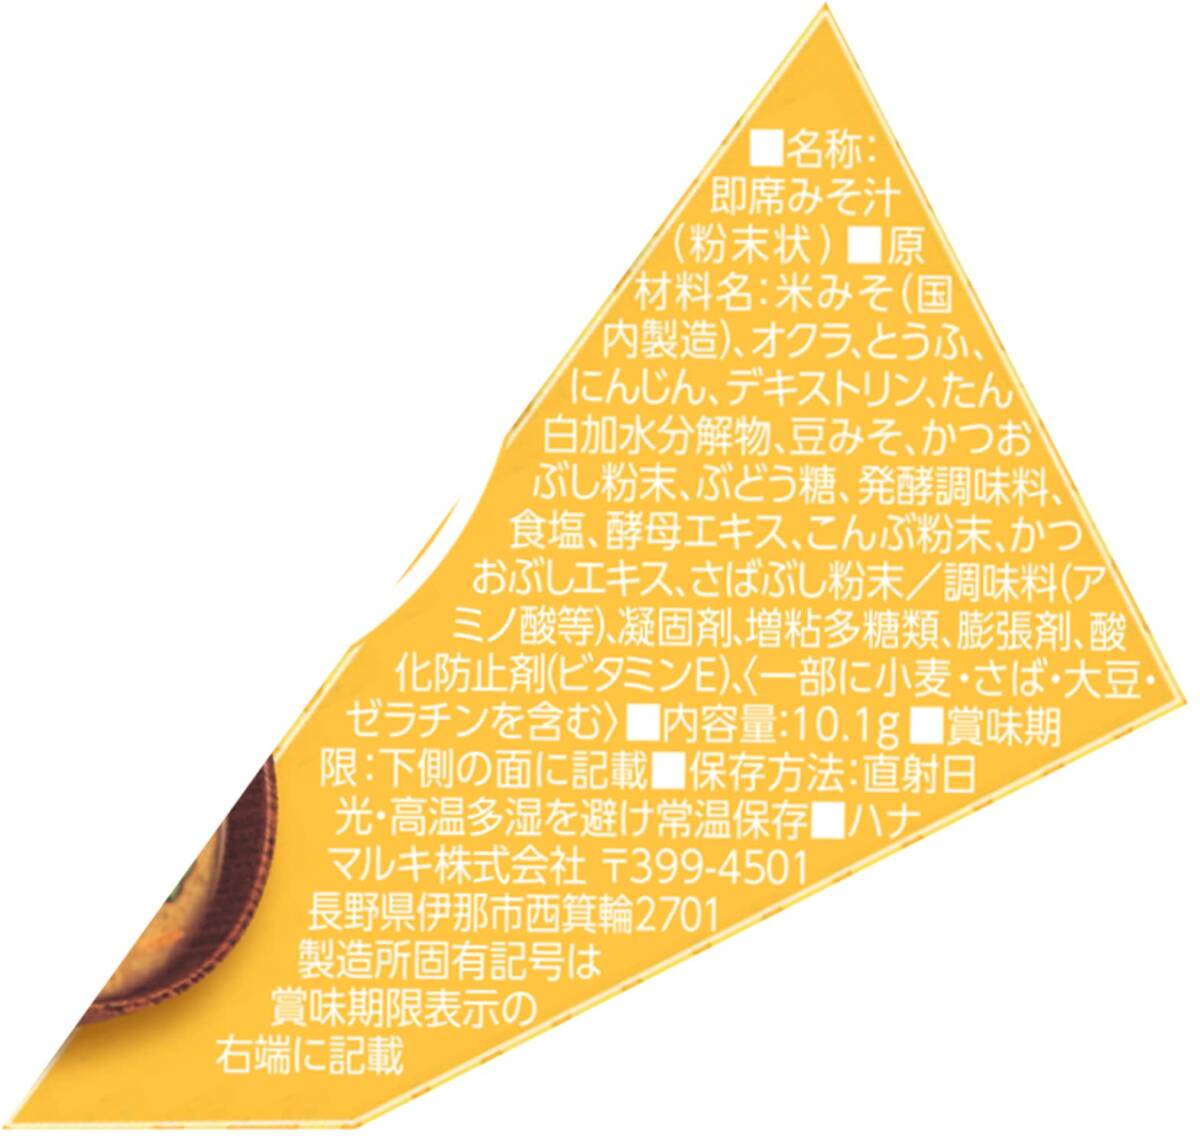  Hanamaruki треугольник P.. похоже абельмош суп мисо 10.1g ×10 пакет 